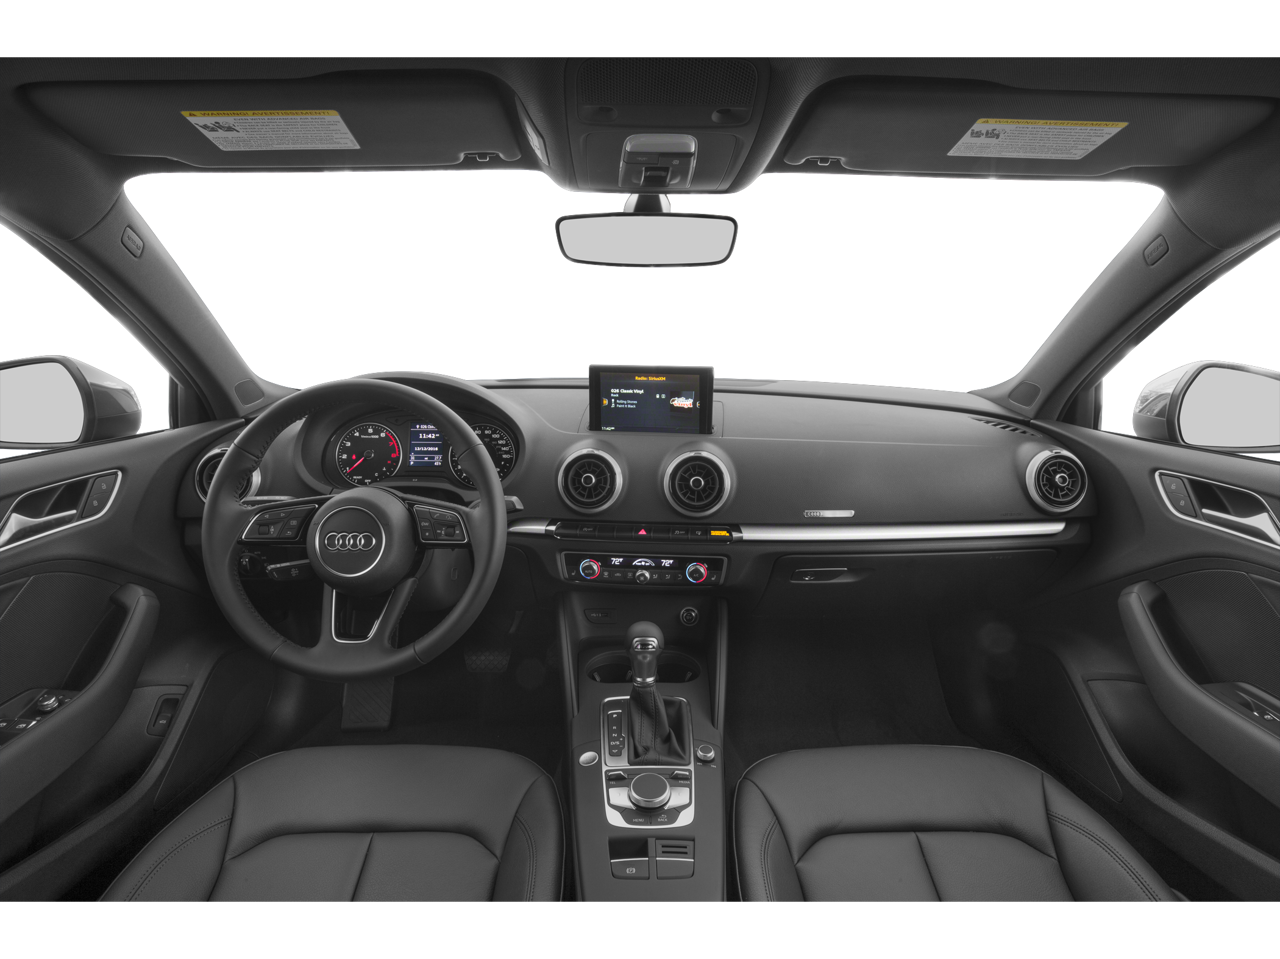 2019 Audi A3 2.0T Premium Plus